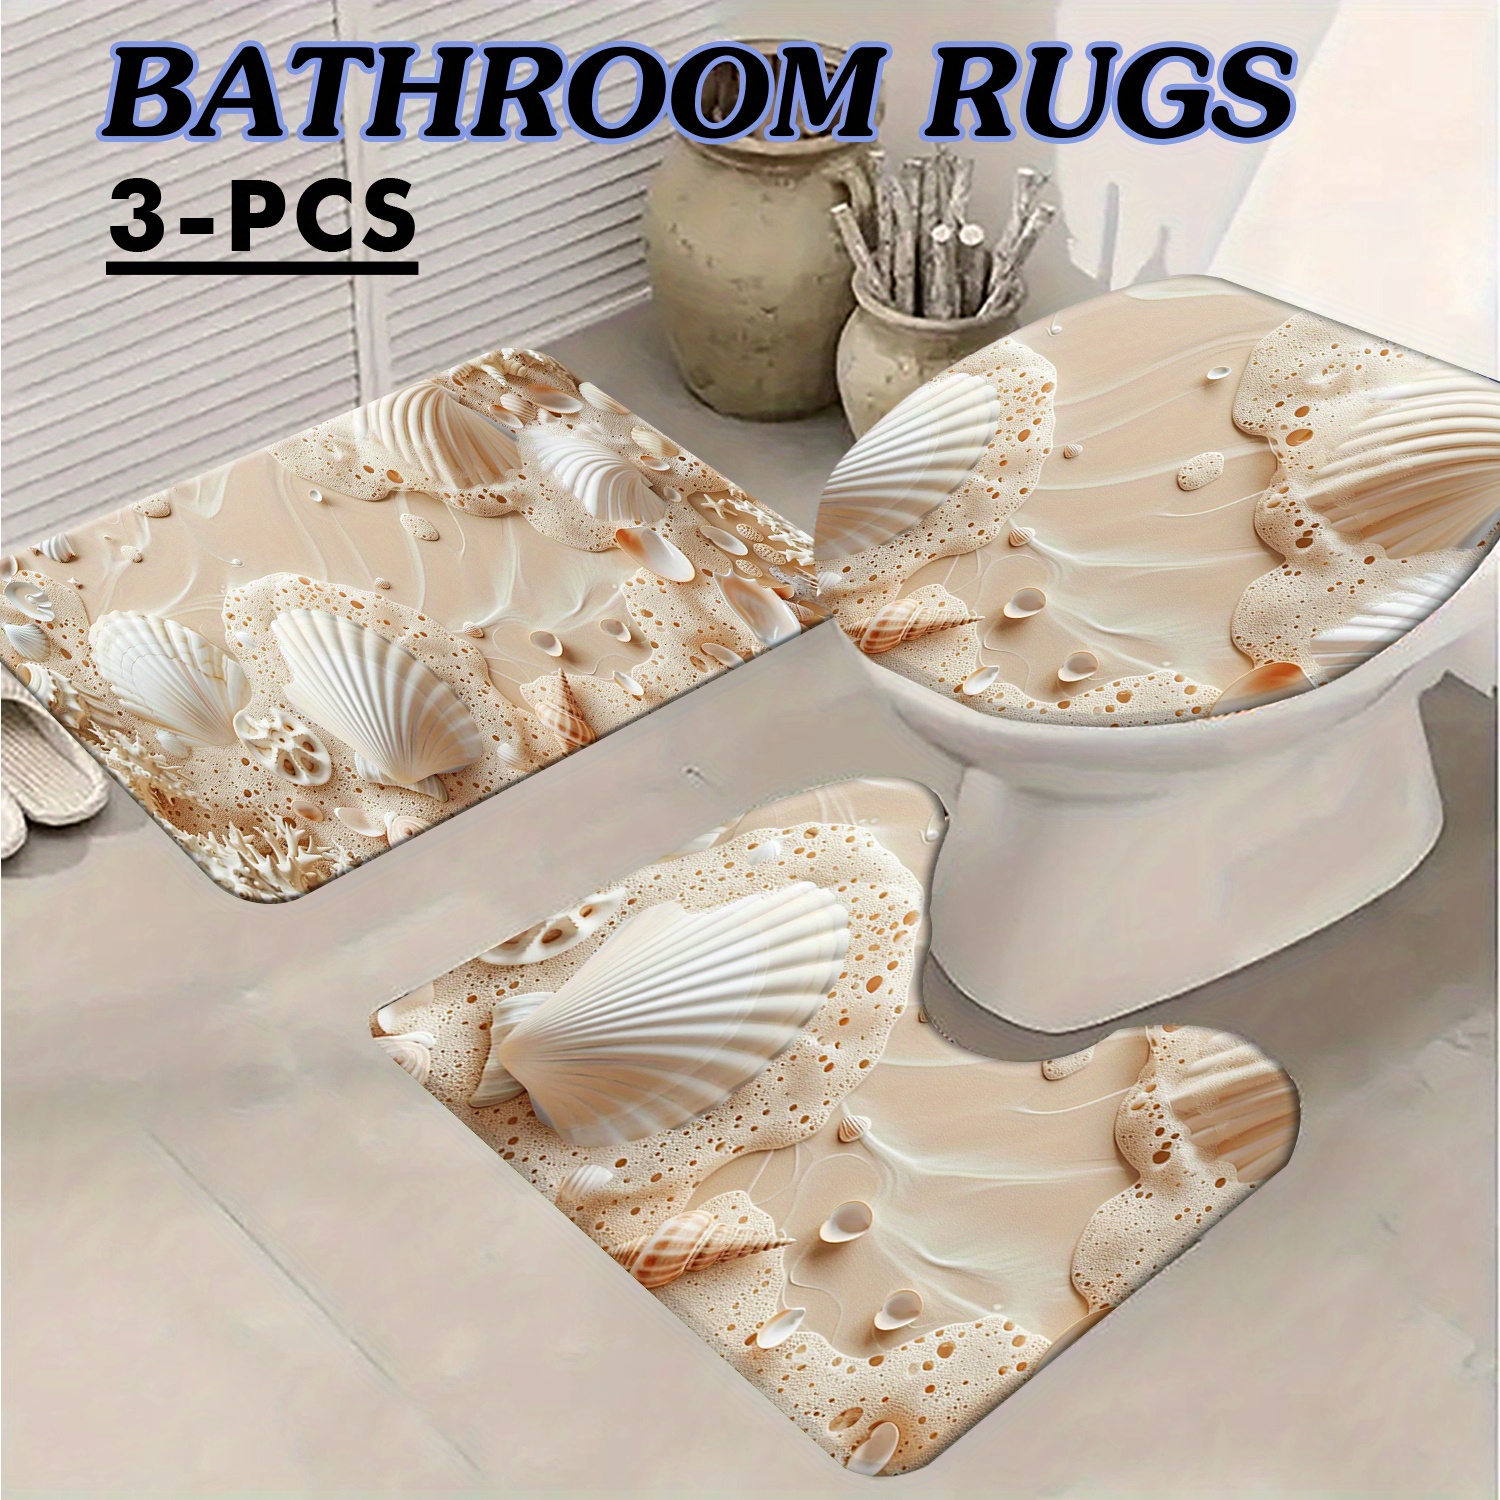 

3pcs Coastal Bathroom Mat Set, Absorbent & Quick-drying Bathroom Floor Carpet, Non-slip & Non-shedding U-shaped Contour Rug & Toilet Lid Mat, For Bathroom Bathtub Toilet, Ideal Bathroom Accessories